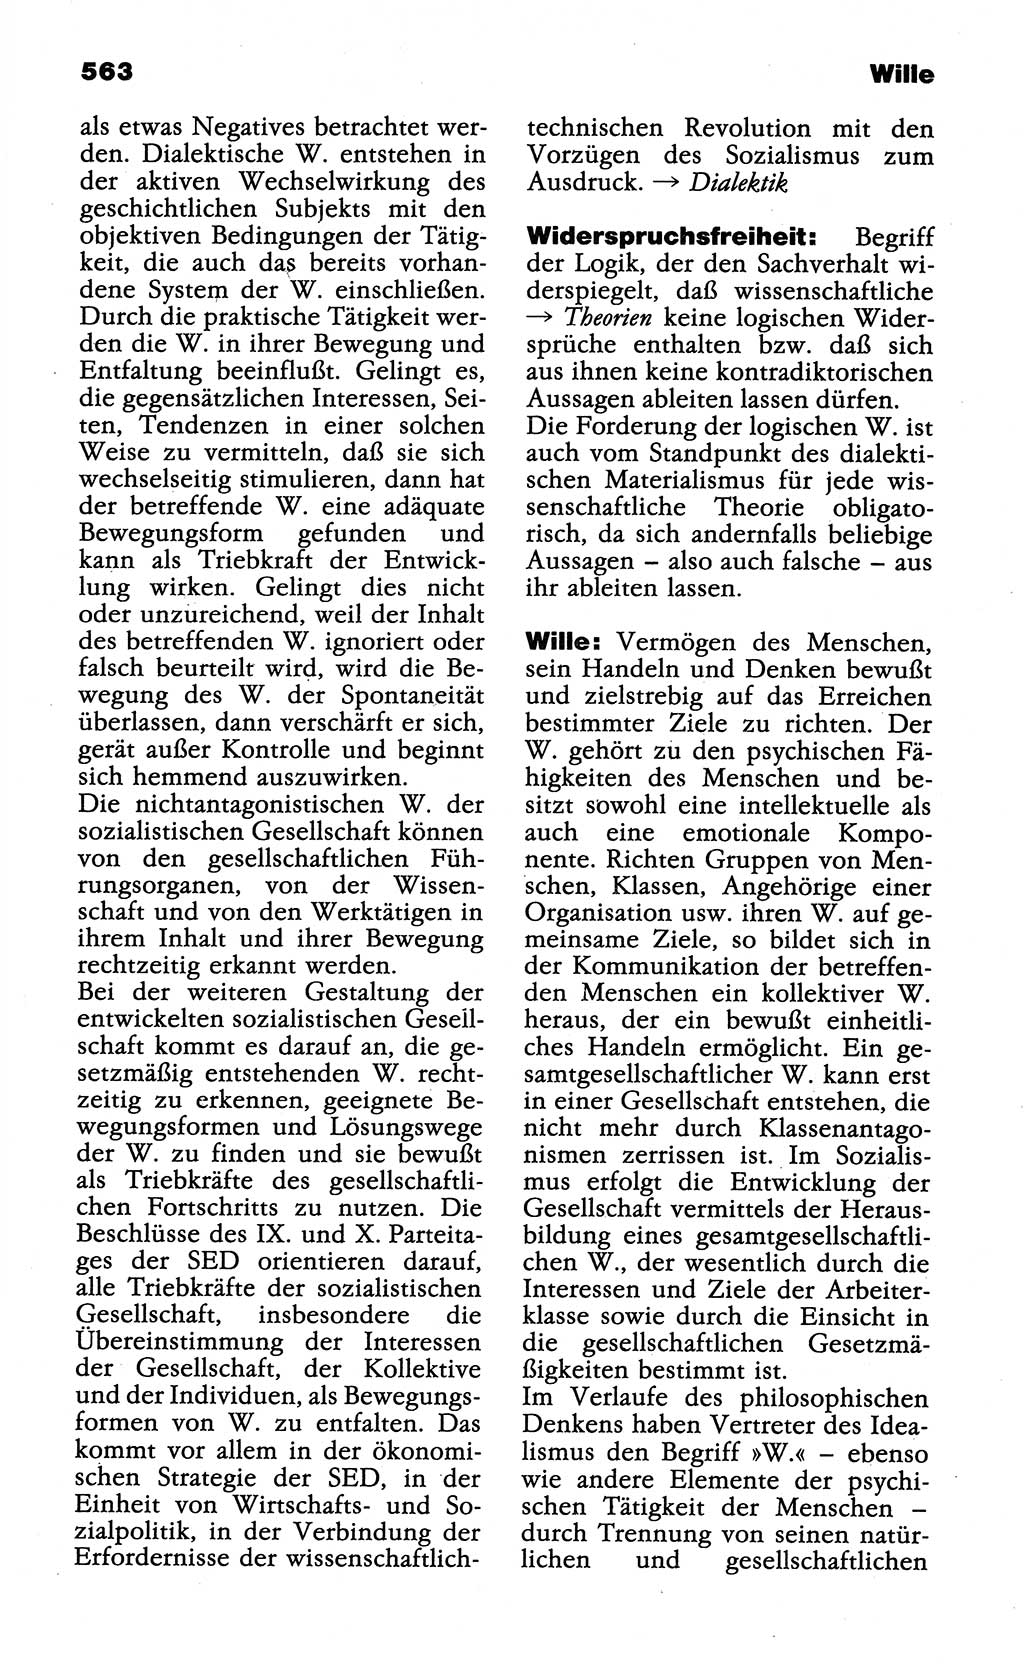 Wörterbuch der marxistisch-leninistischen Philosophie [Deutsche Demokratische Republik (DDR)] 1985, Seite 563 (Wb. ML Phil. DDR 1985, S. 563)